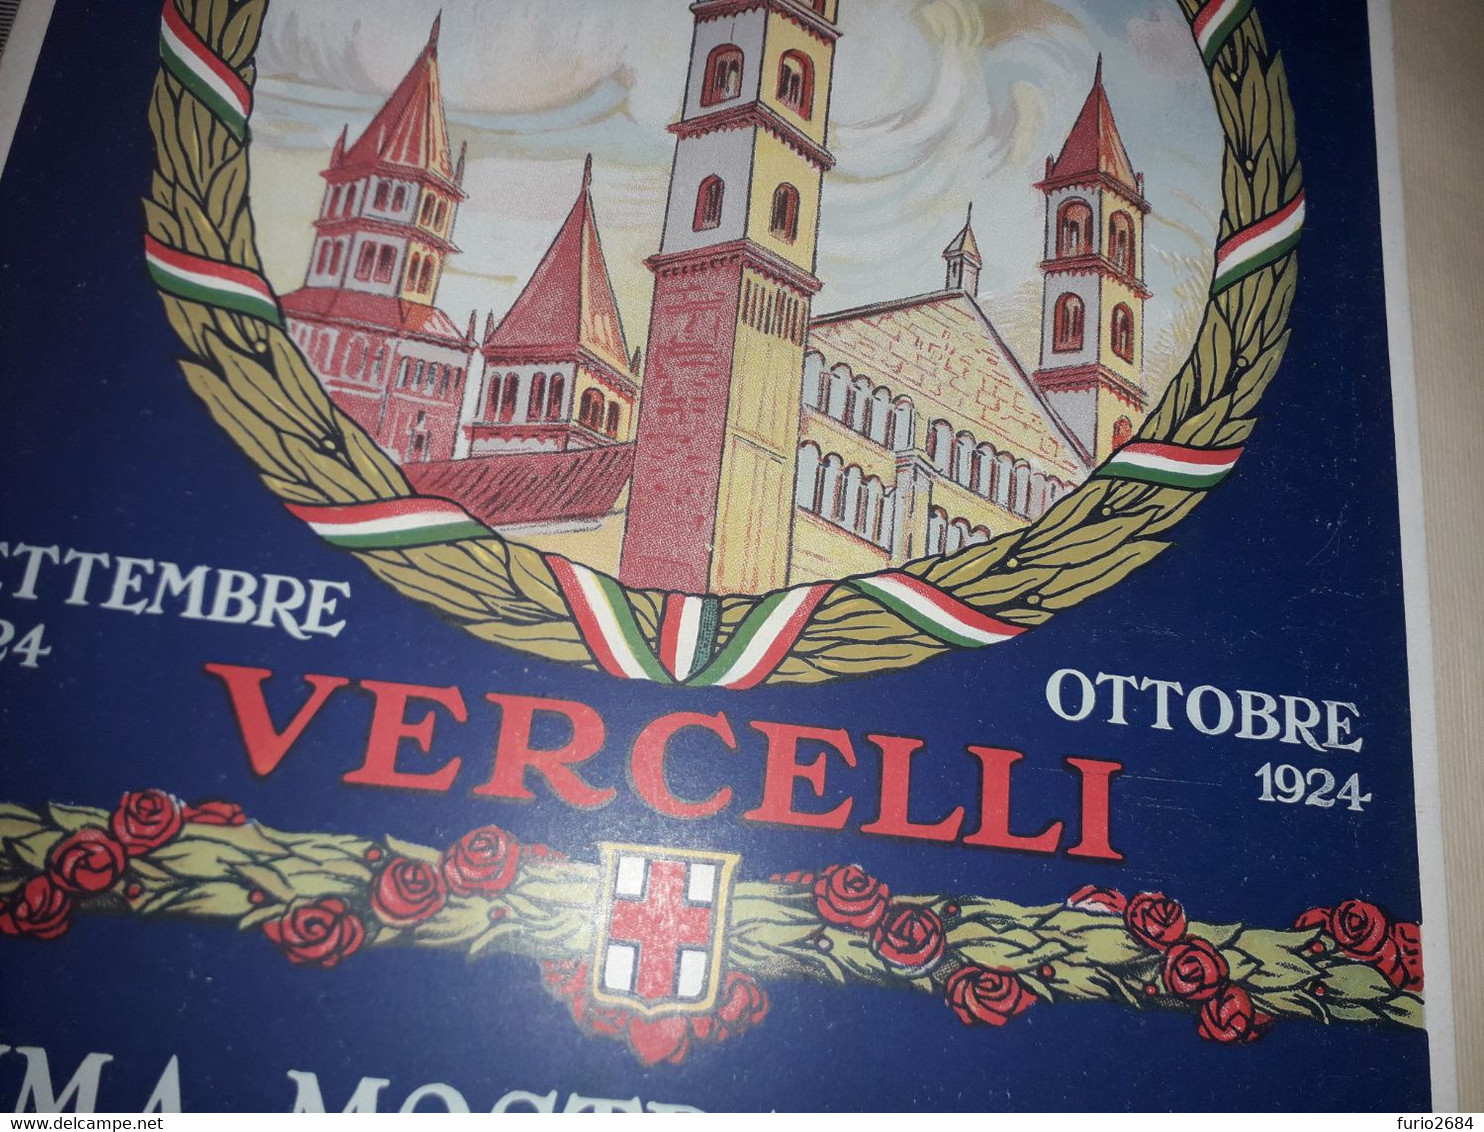 VERCELLI PRIMA MOSTRA ITALIANA DI ATTIVITA' MUNICIPALE SETTEMBRE OTTOBRE 1924 CARTELLO PUBBLICITARIO IN CARTONE - Plaques En Carton